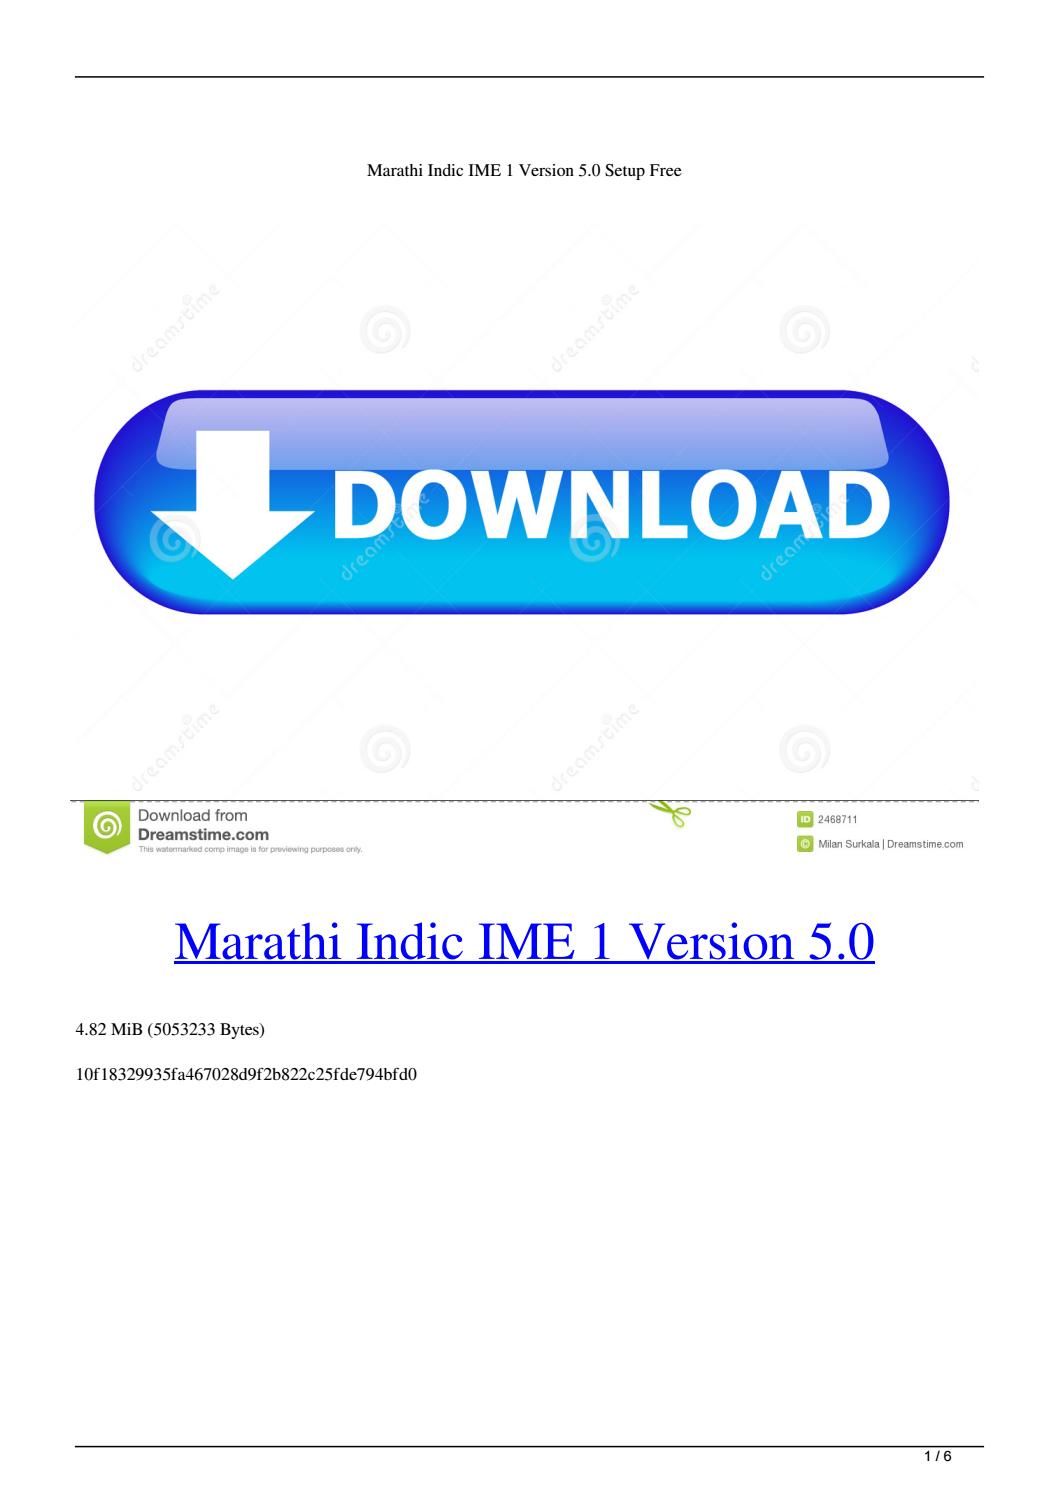 hindi indic ime 1 v 5.1 free download